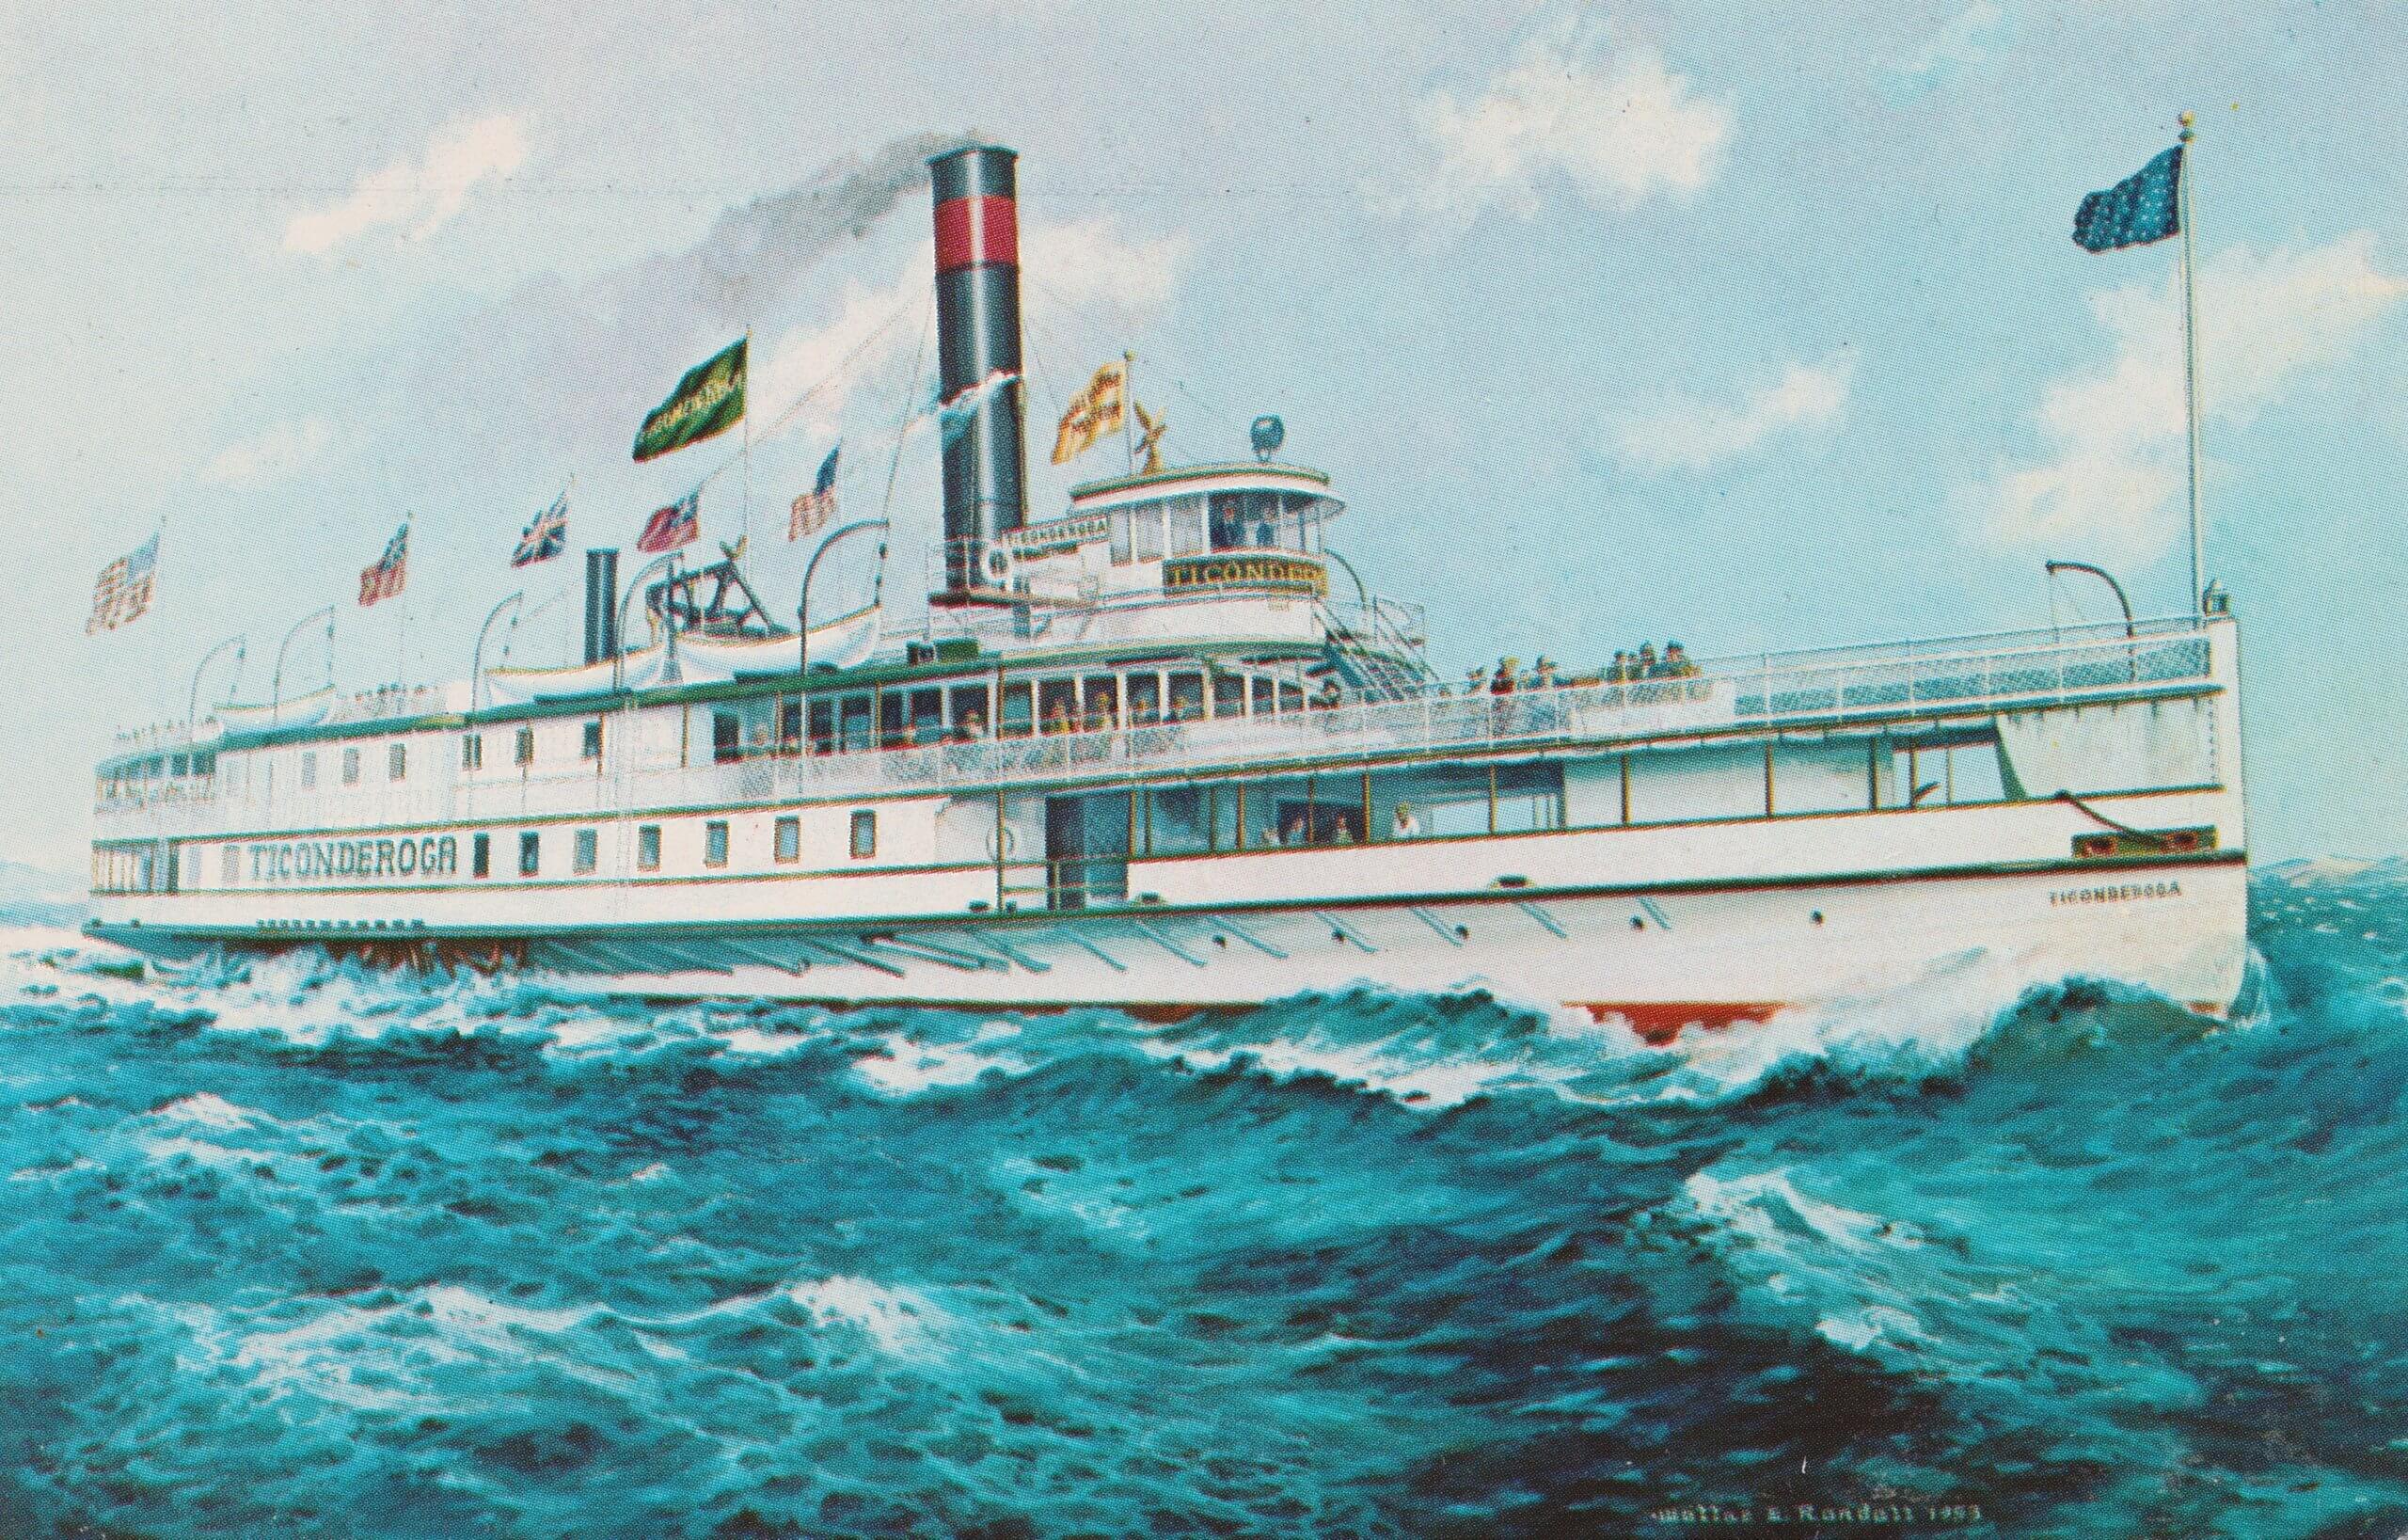 Vintage Postcard: Ticonderoga Steamer